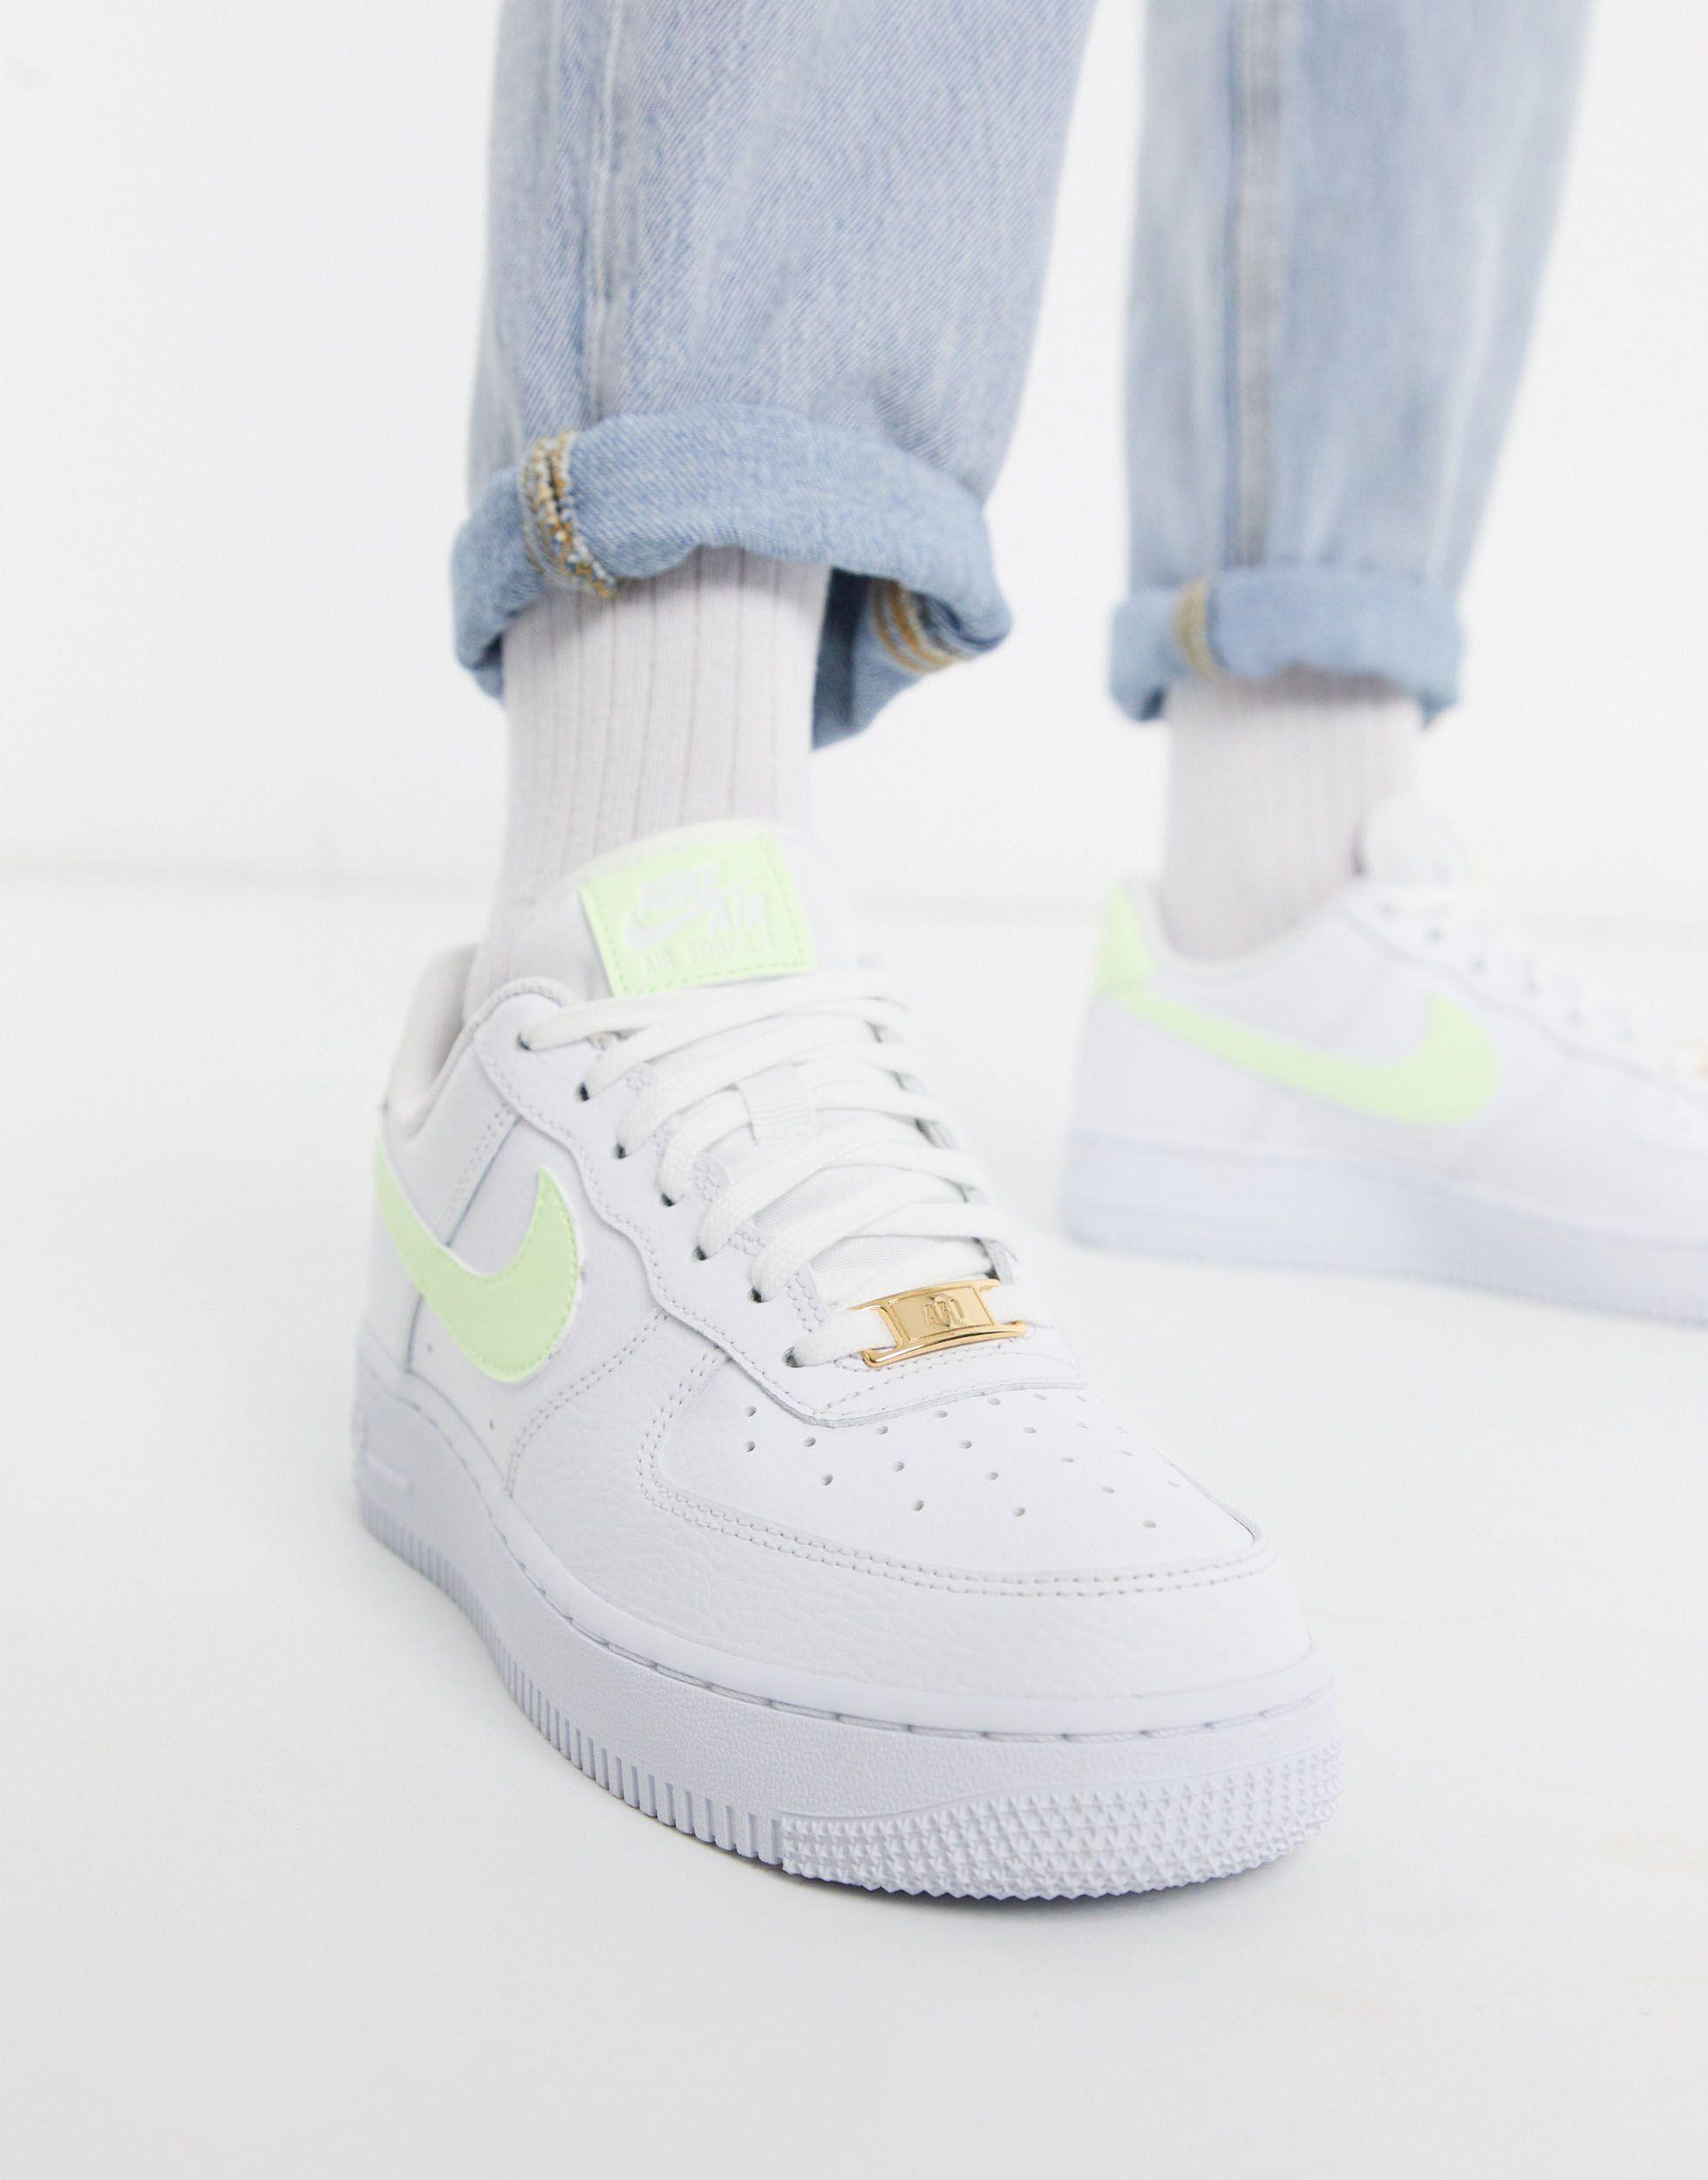 خلفيات فارغة Nike Rubber Air Force 1 '07 White And Fluro Green Sneakers | Lyst خلفيات فارغة